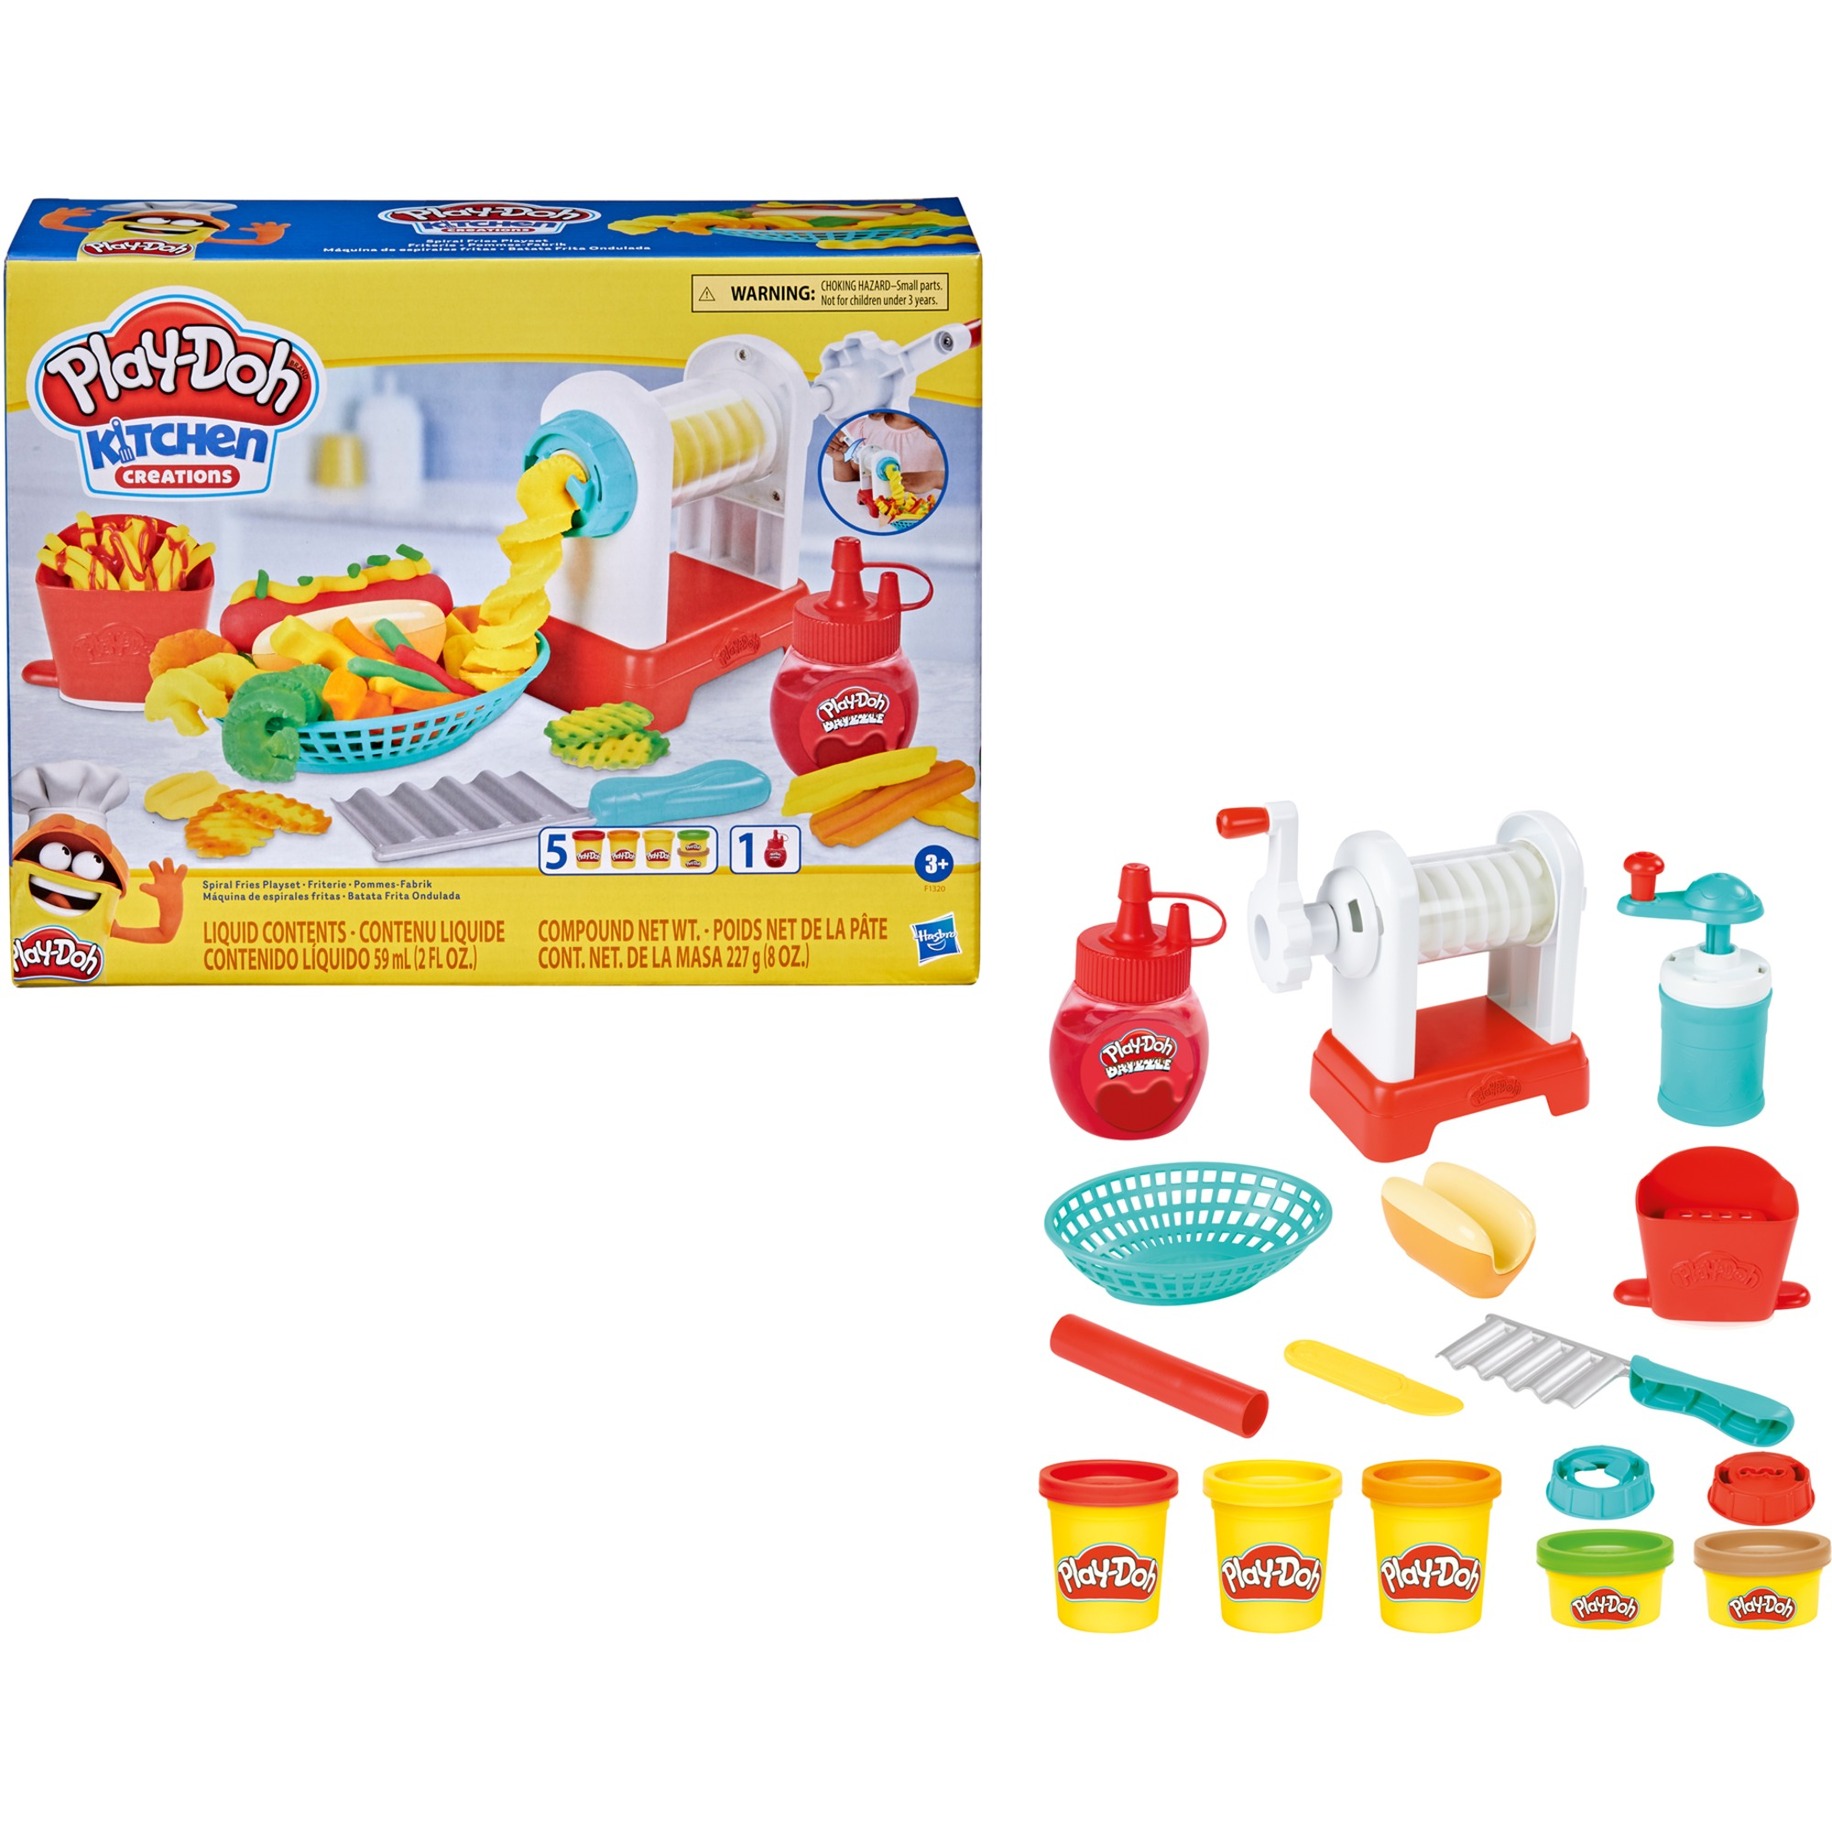 Image of Alternate - Play-Doh Pommes-Fabrik, Kneten online einkaufen bei Alternate